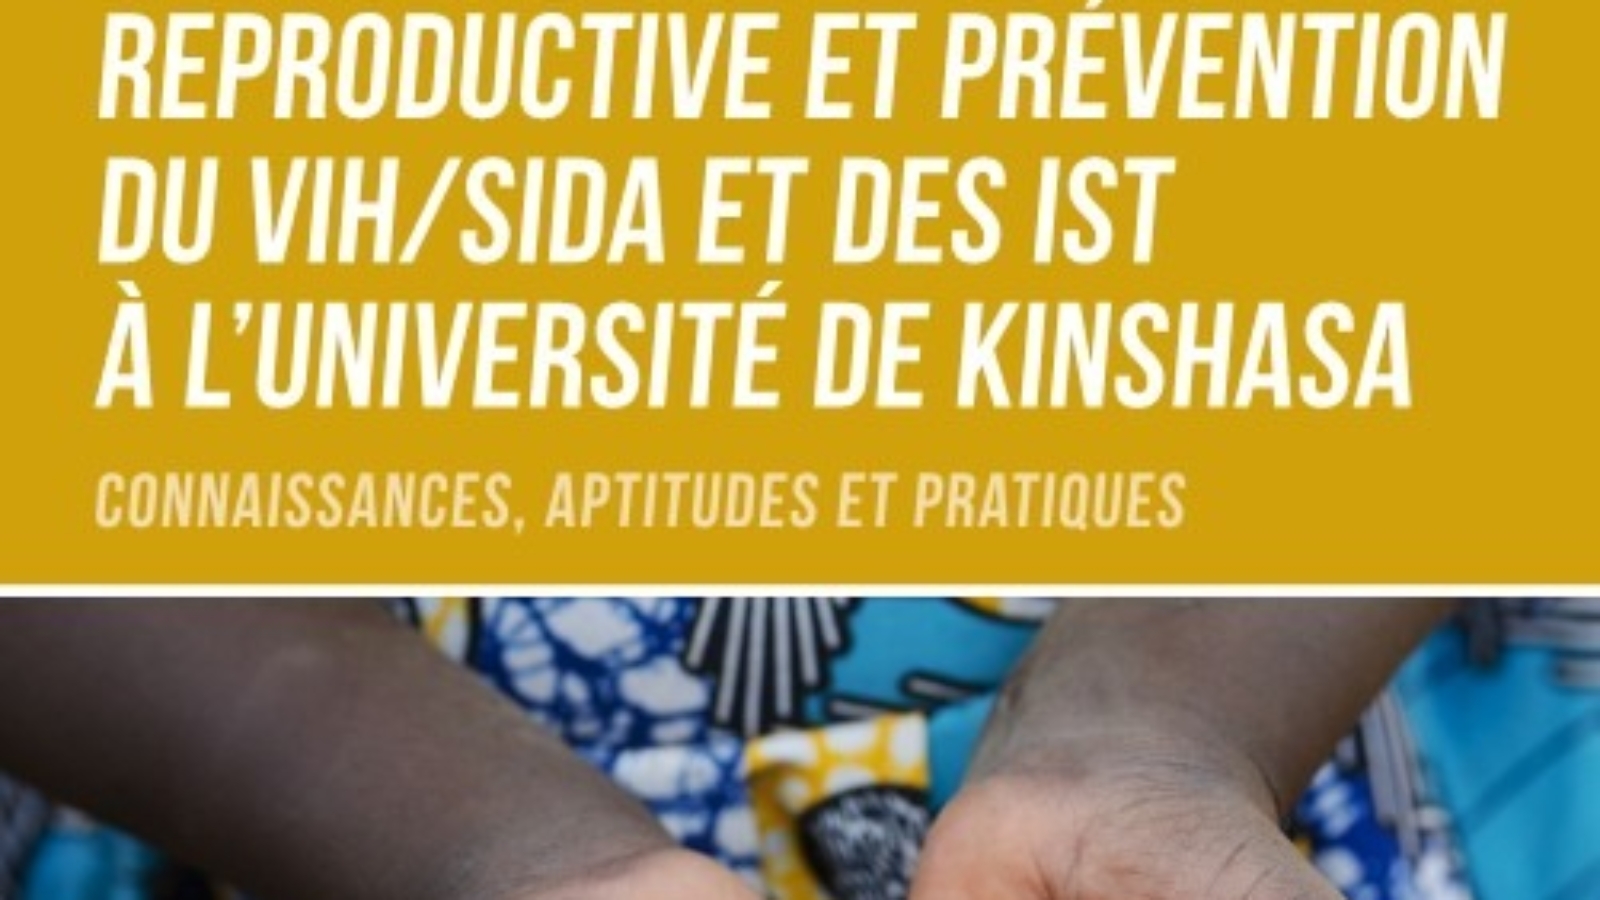 Promotion de la santé reproductive et prévention du VIH SIDA et des IST à l'Université de Kinshasa